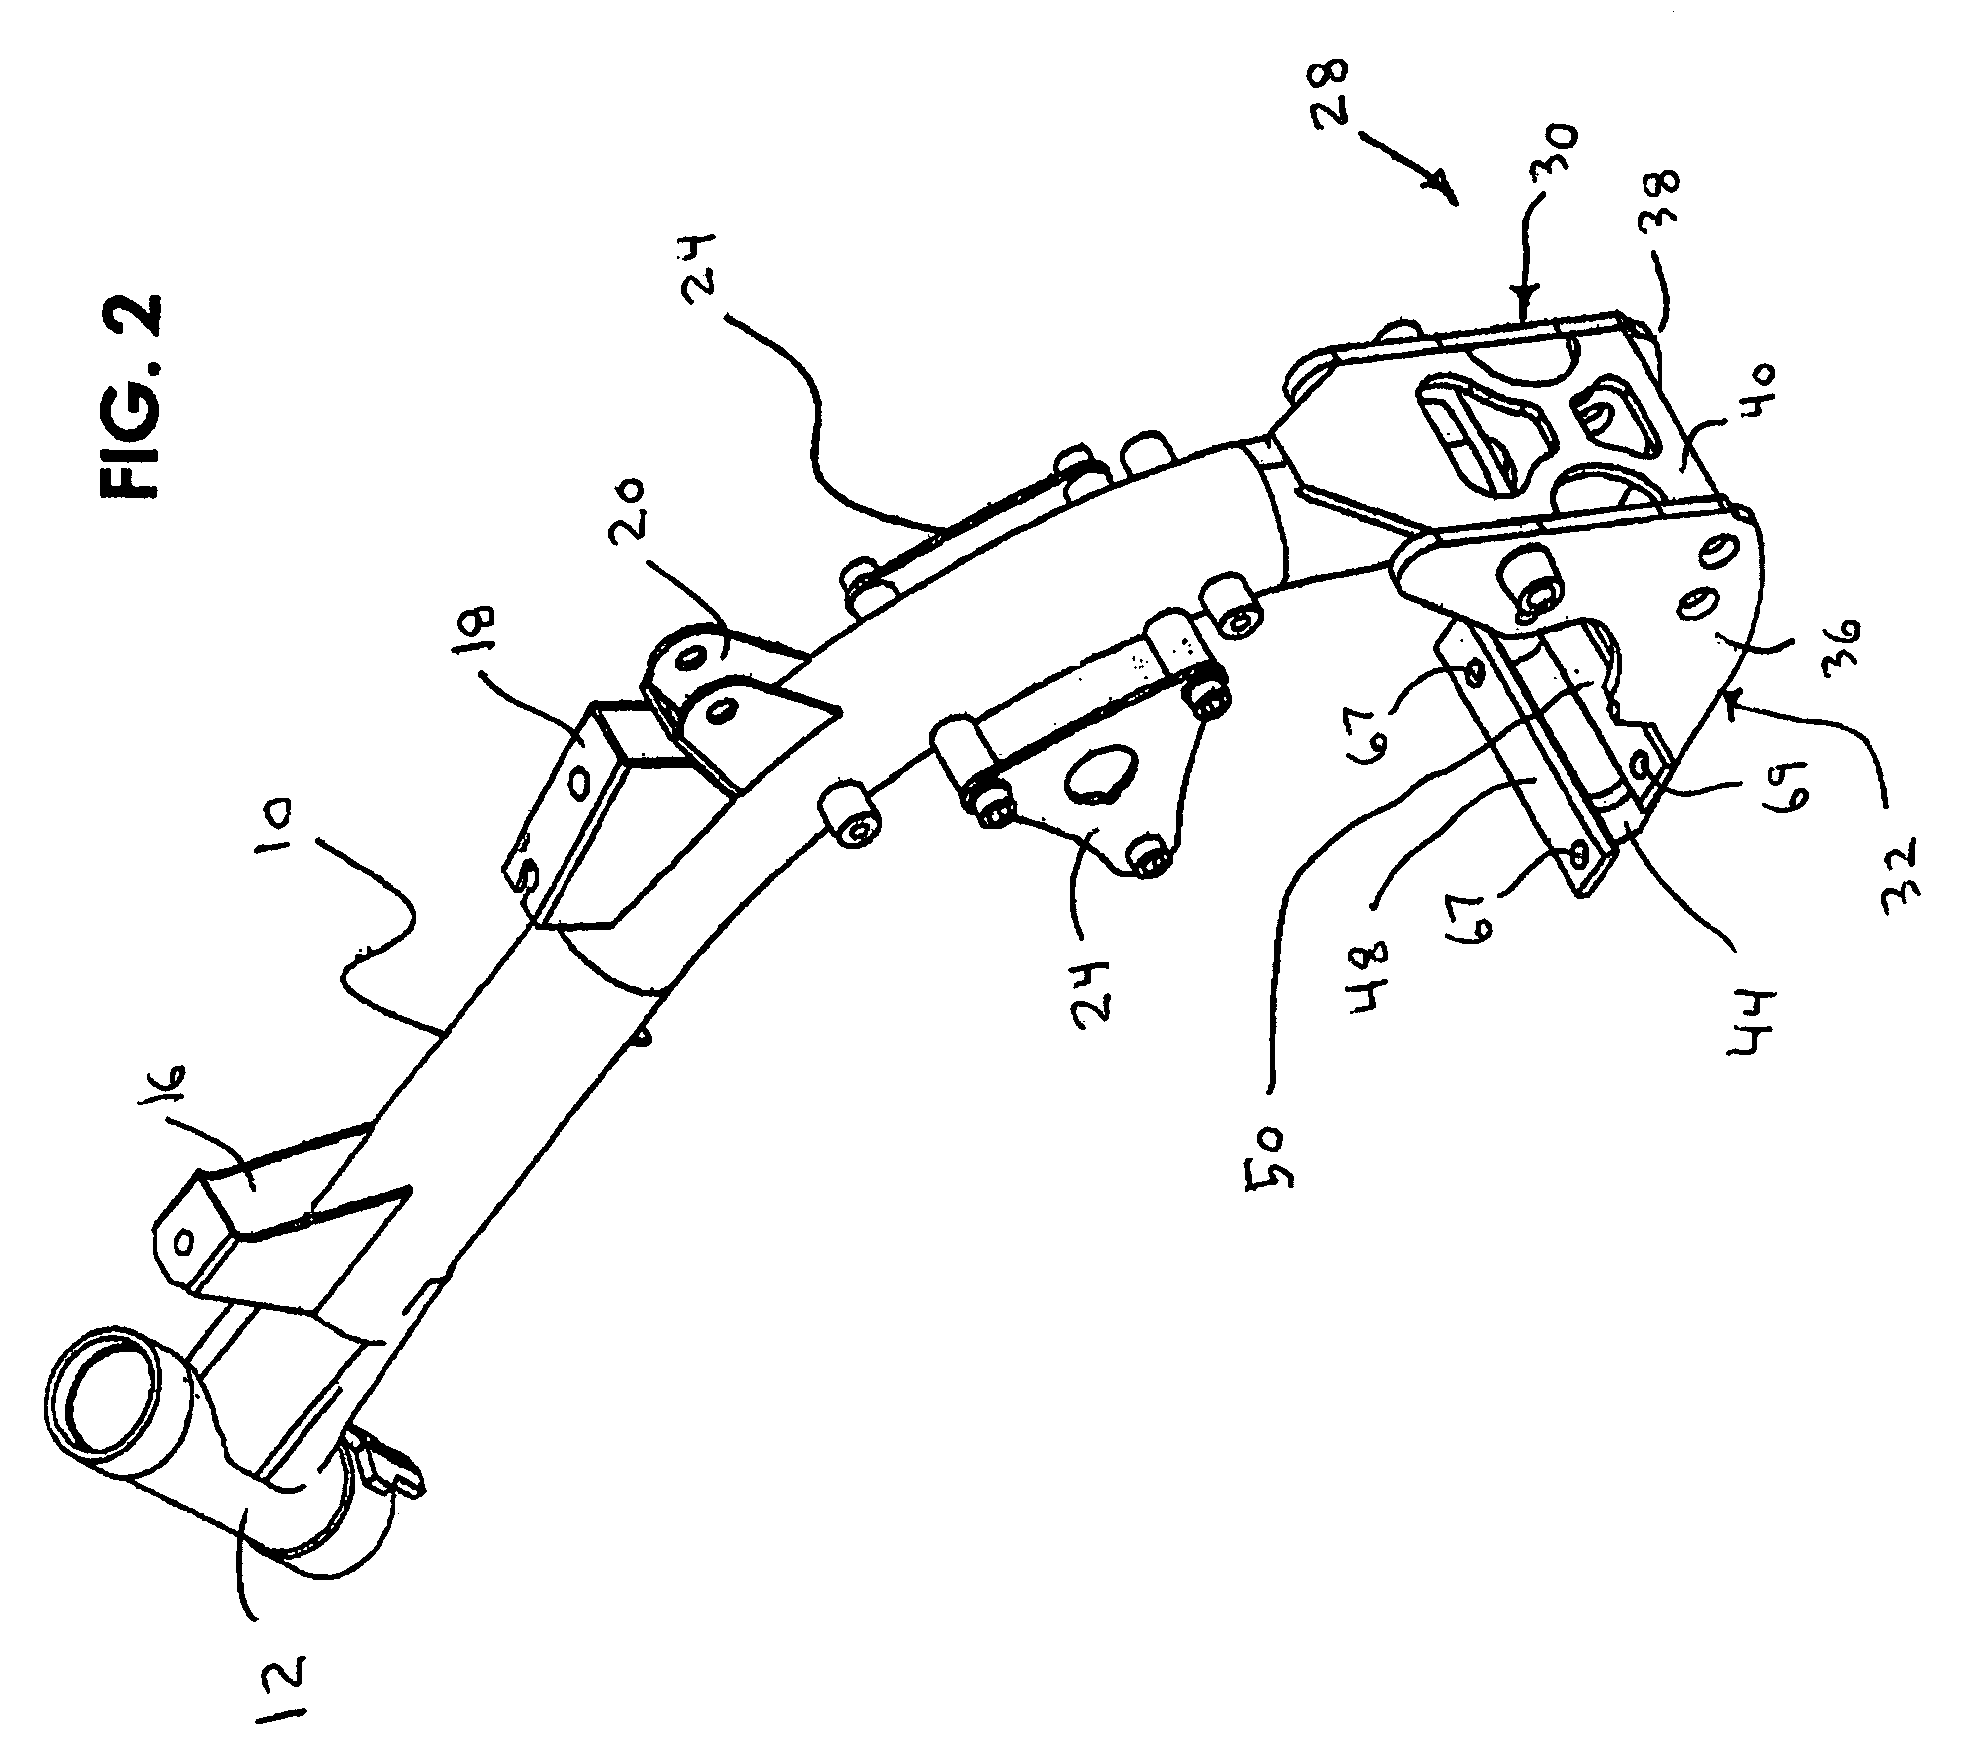 Motorcycle foot peg "cradle mount bracket"